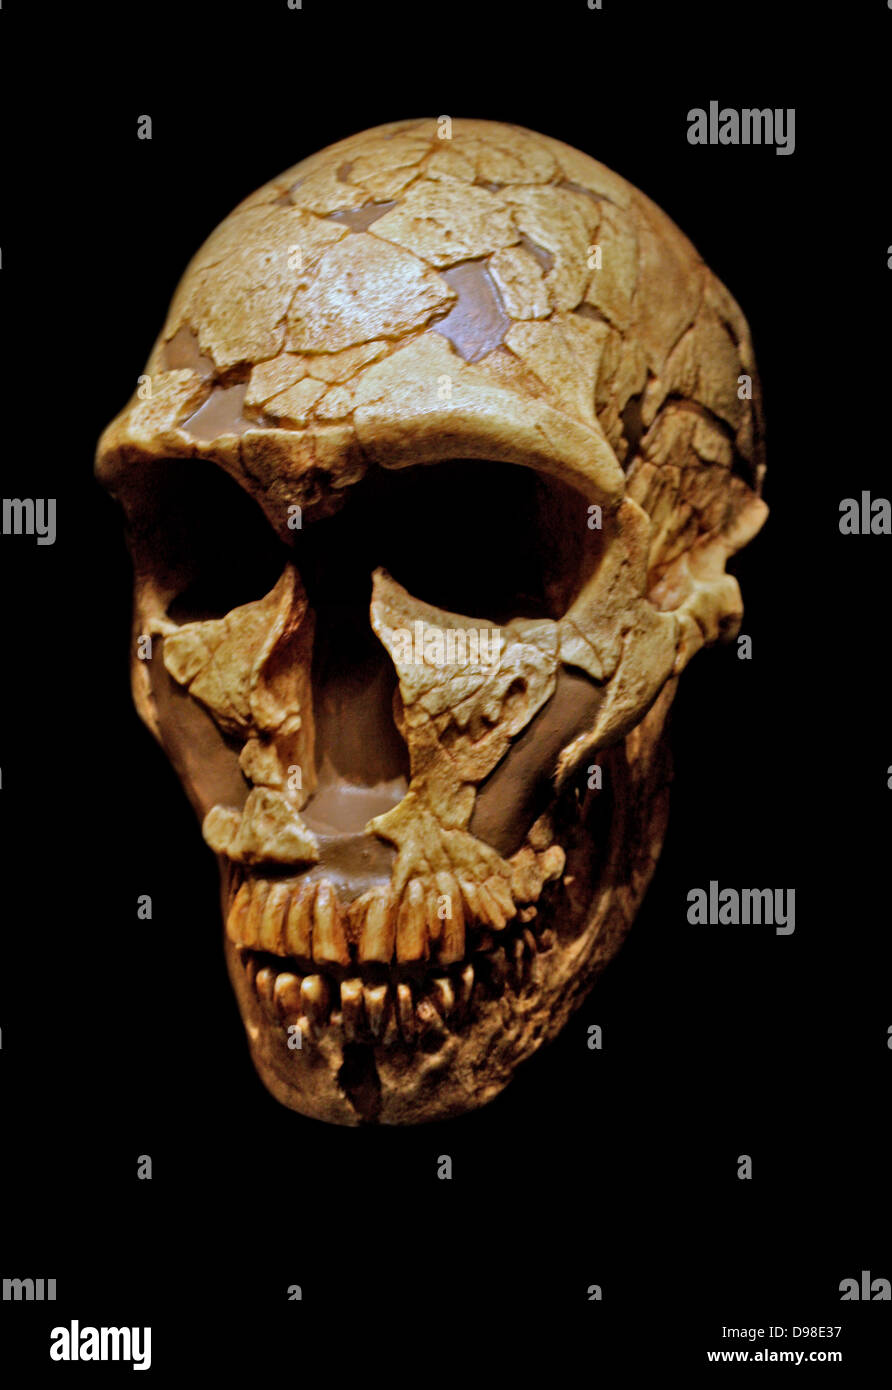 Homo neanderthalensis, La Ferrassie 1 Schädel, ungefähr 70.000 Jahren. Von einem erwachsenen Mann Schädel aus einem Skelett im La Ferrassie rock Zuflucht gefunden, in der Nähe von Les Eyzies, Frankreich im Jahr 1909. Der Schädel zeigt typische Neandertaler ein fliehendes Kinn, niedrige gewölbter Schädel und prominente Doppel Stirn- Ridge. Sieben andere Neanderthal Skelette waren ebenfalls vor Ort begraben. Neandertaler lebten in Europa von etwa 200,000-30,000 Jahren. Stockfoto